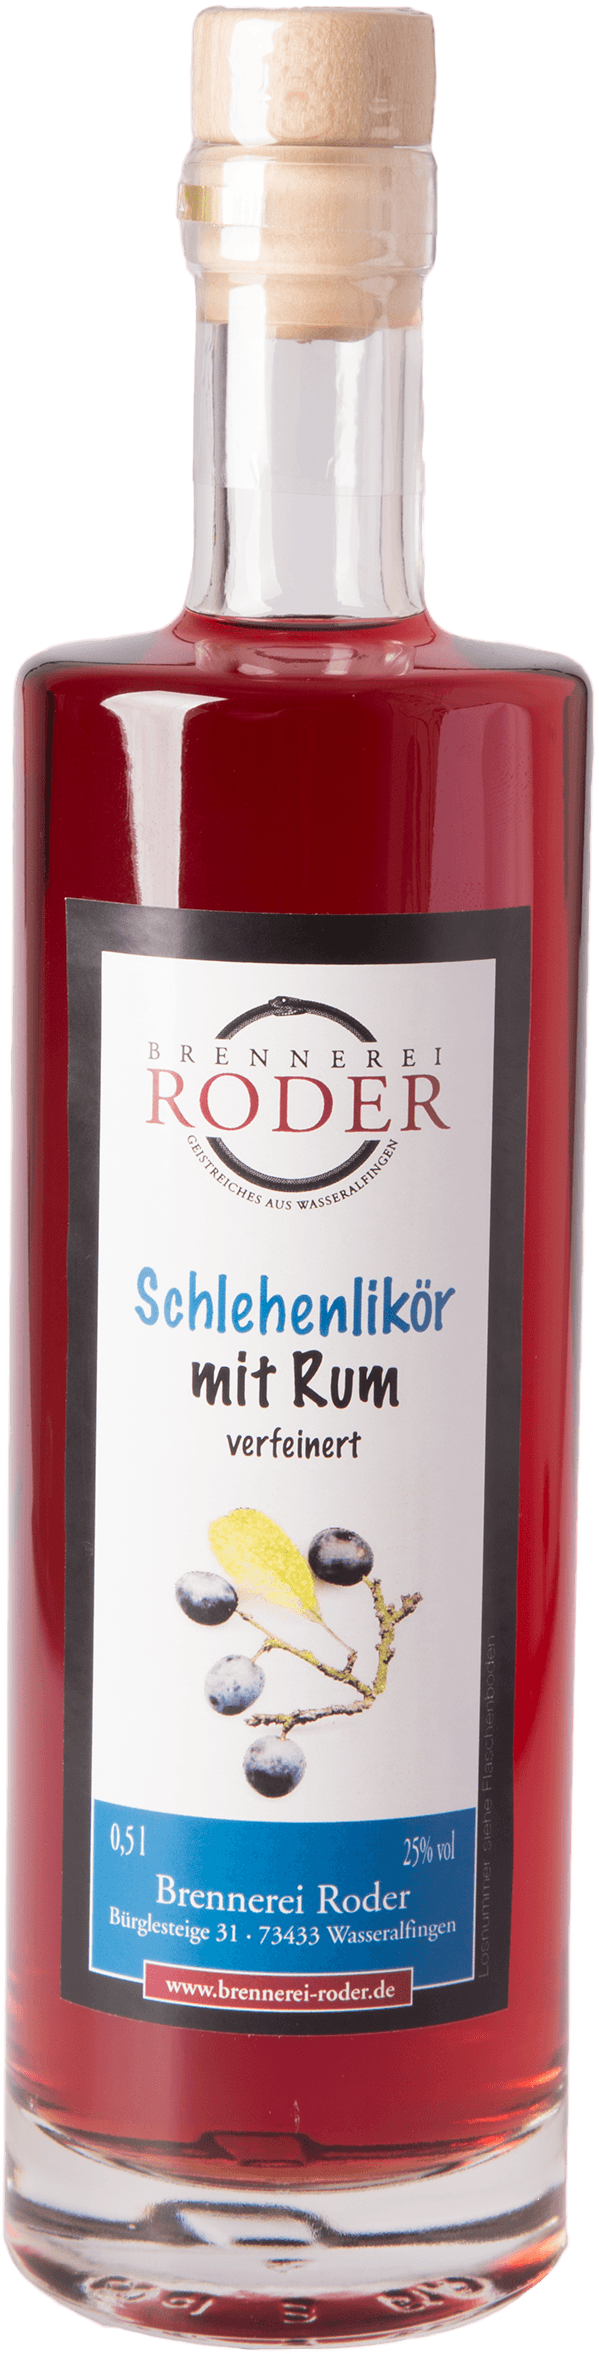 roder-schlehenlikoer-mit-rum-25-prozent-shop